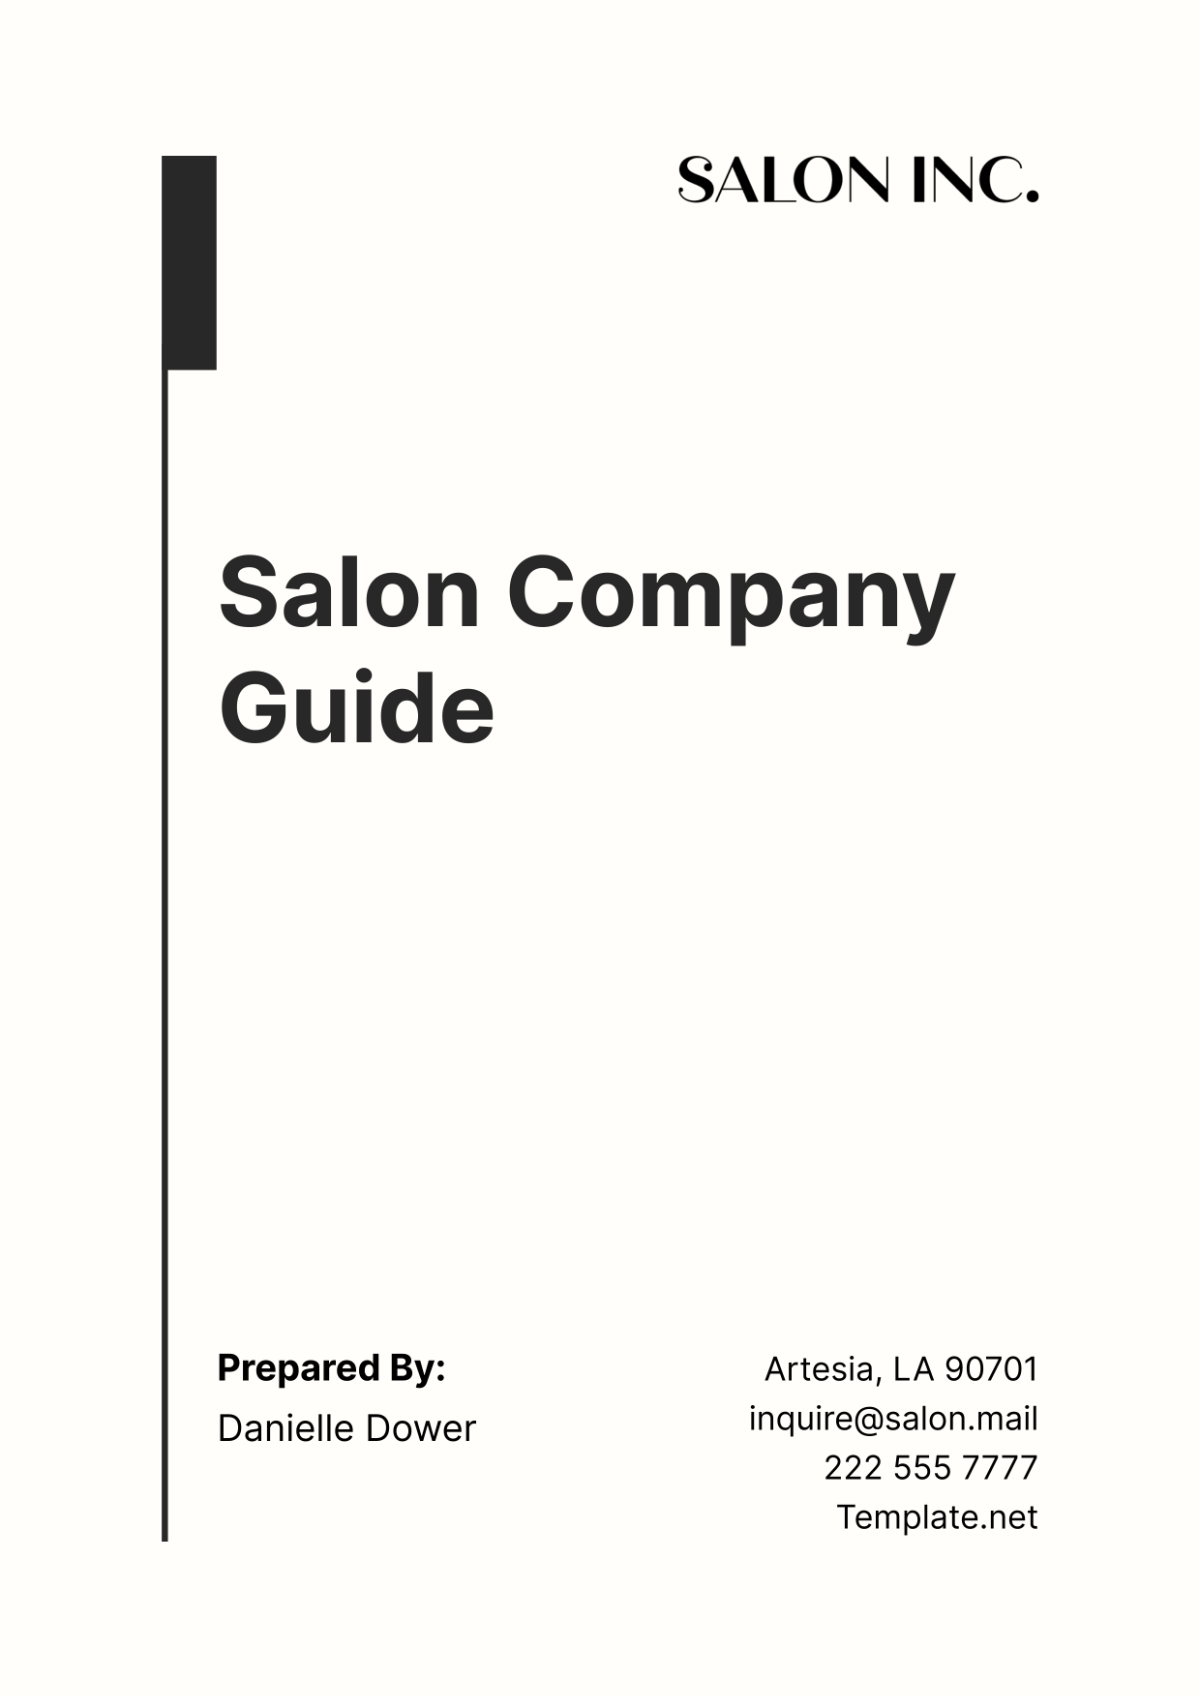 Salon Company Guide Template